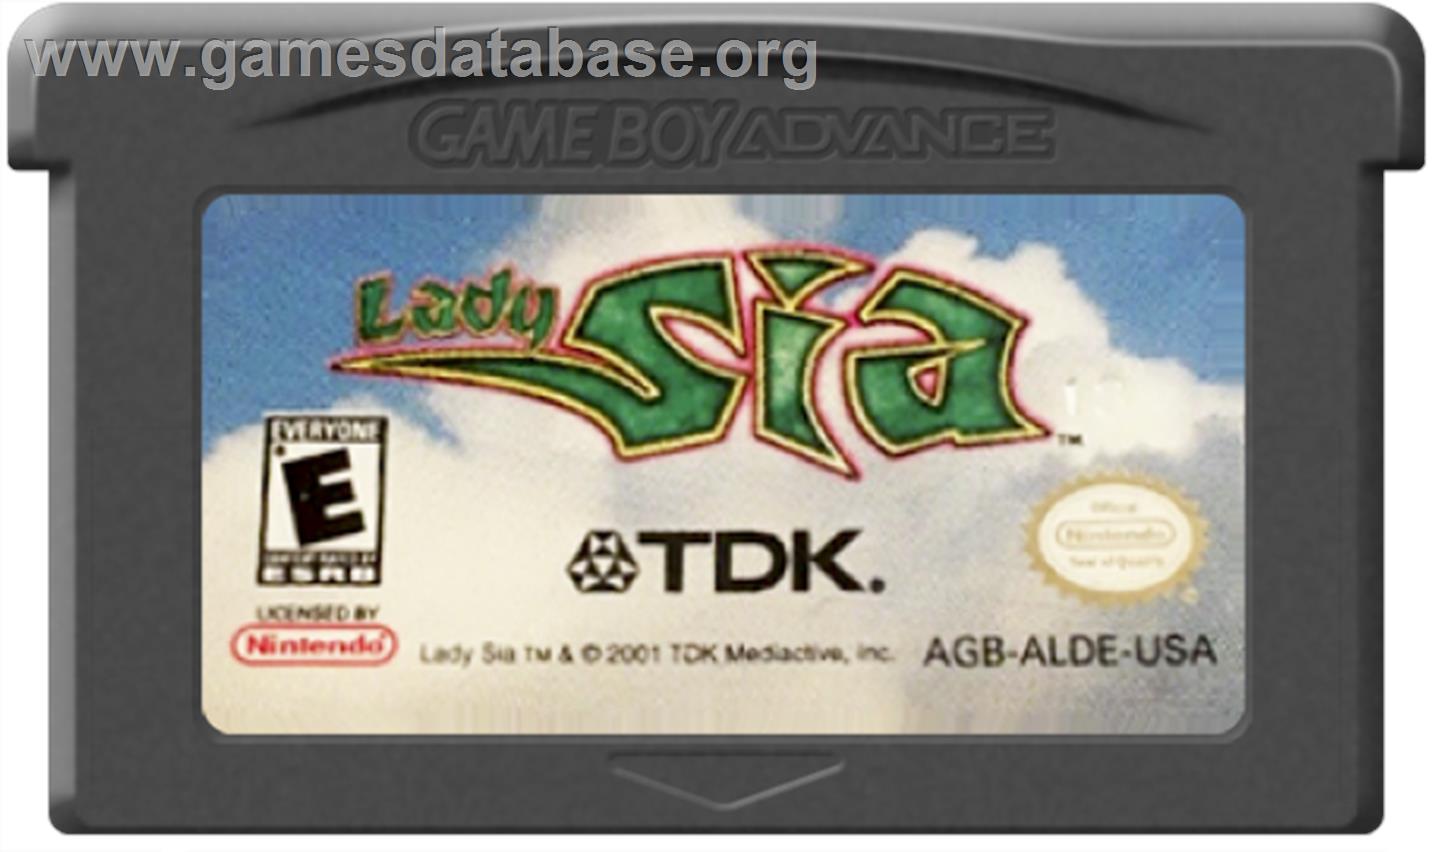 Lady Sia - Nintendo Game Boy Advance - Artwork - Cartridge